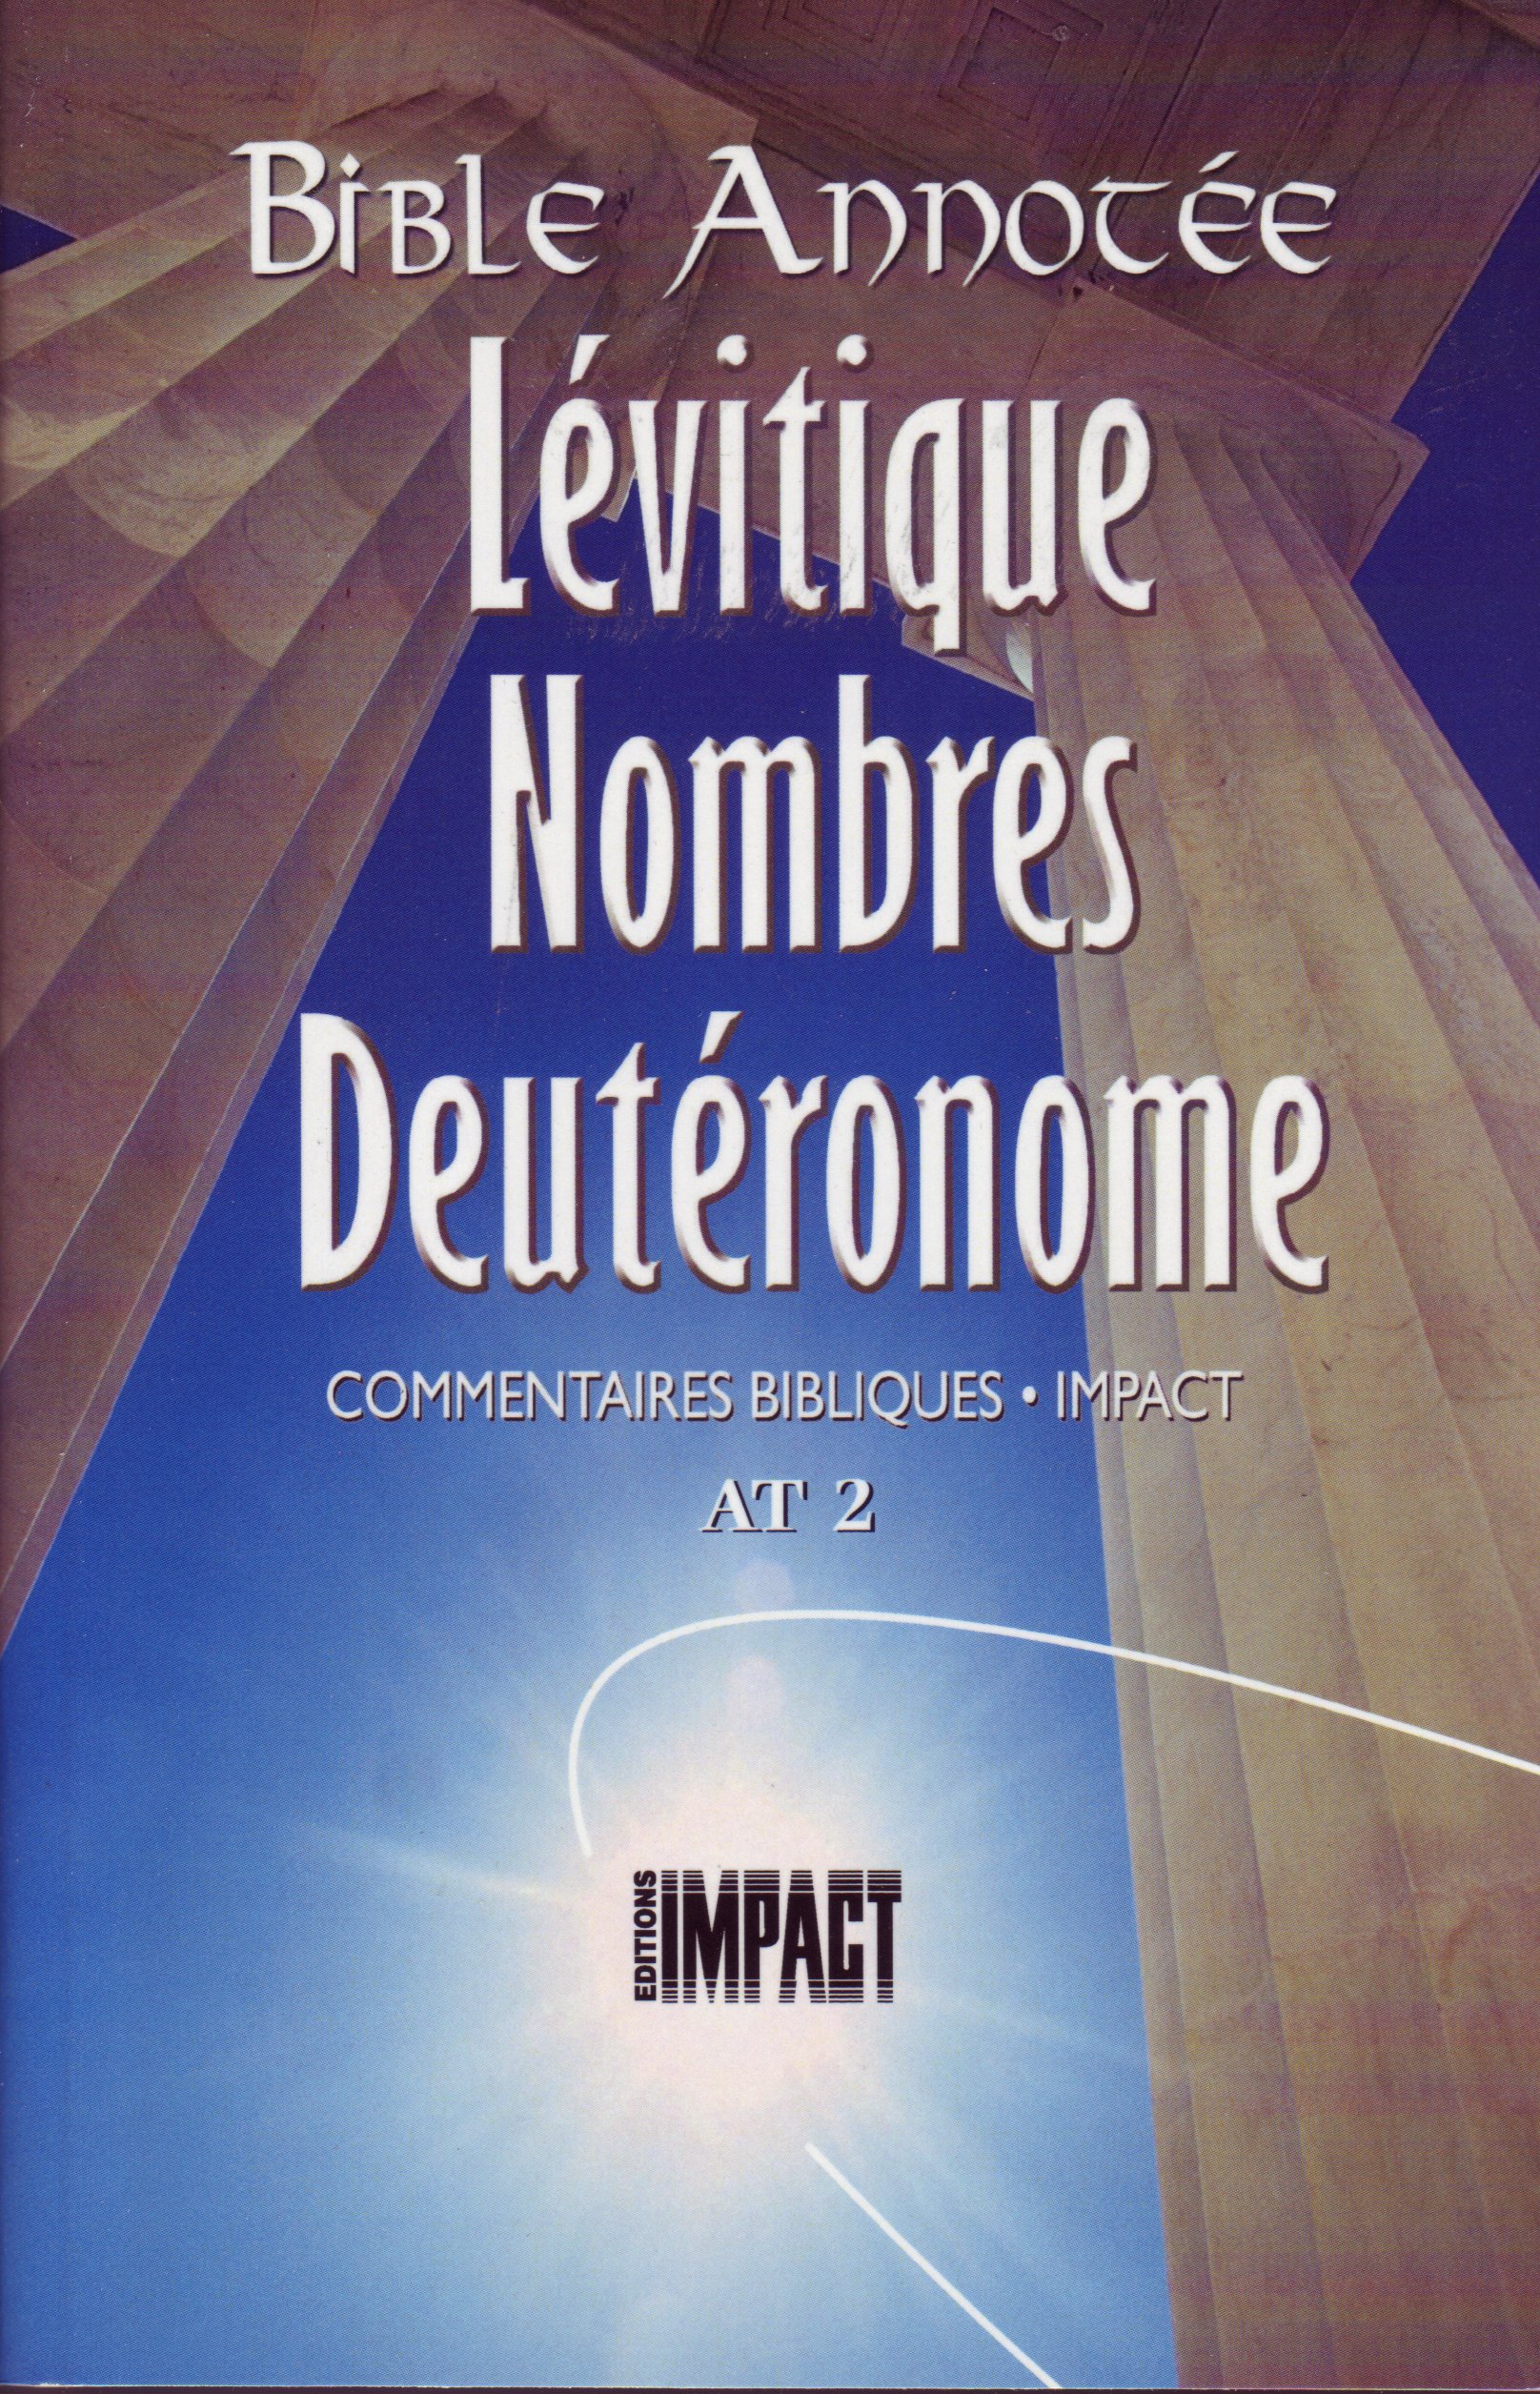 Bible Annotée - Lévitique Nombres Deutéronome (La) - Commentaires bibliques Impact AT 2